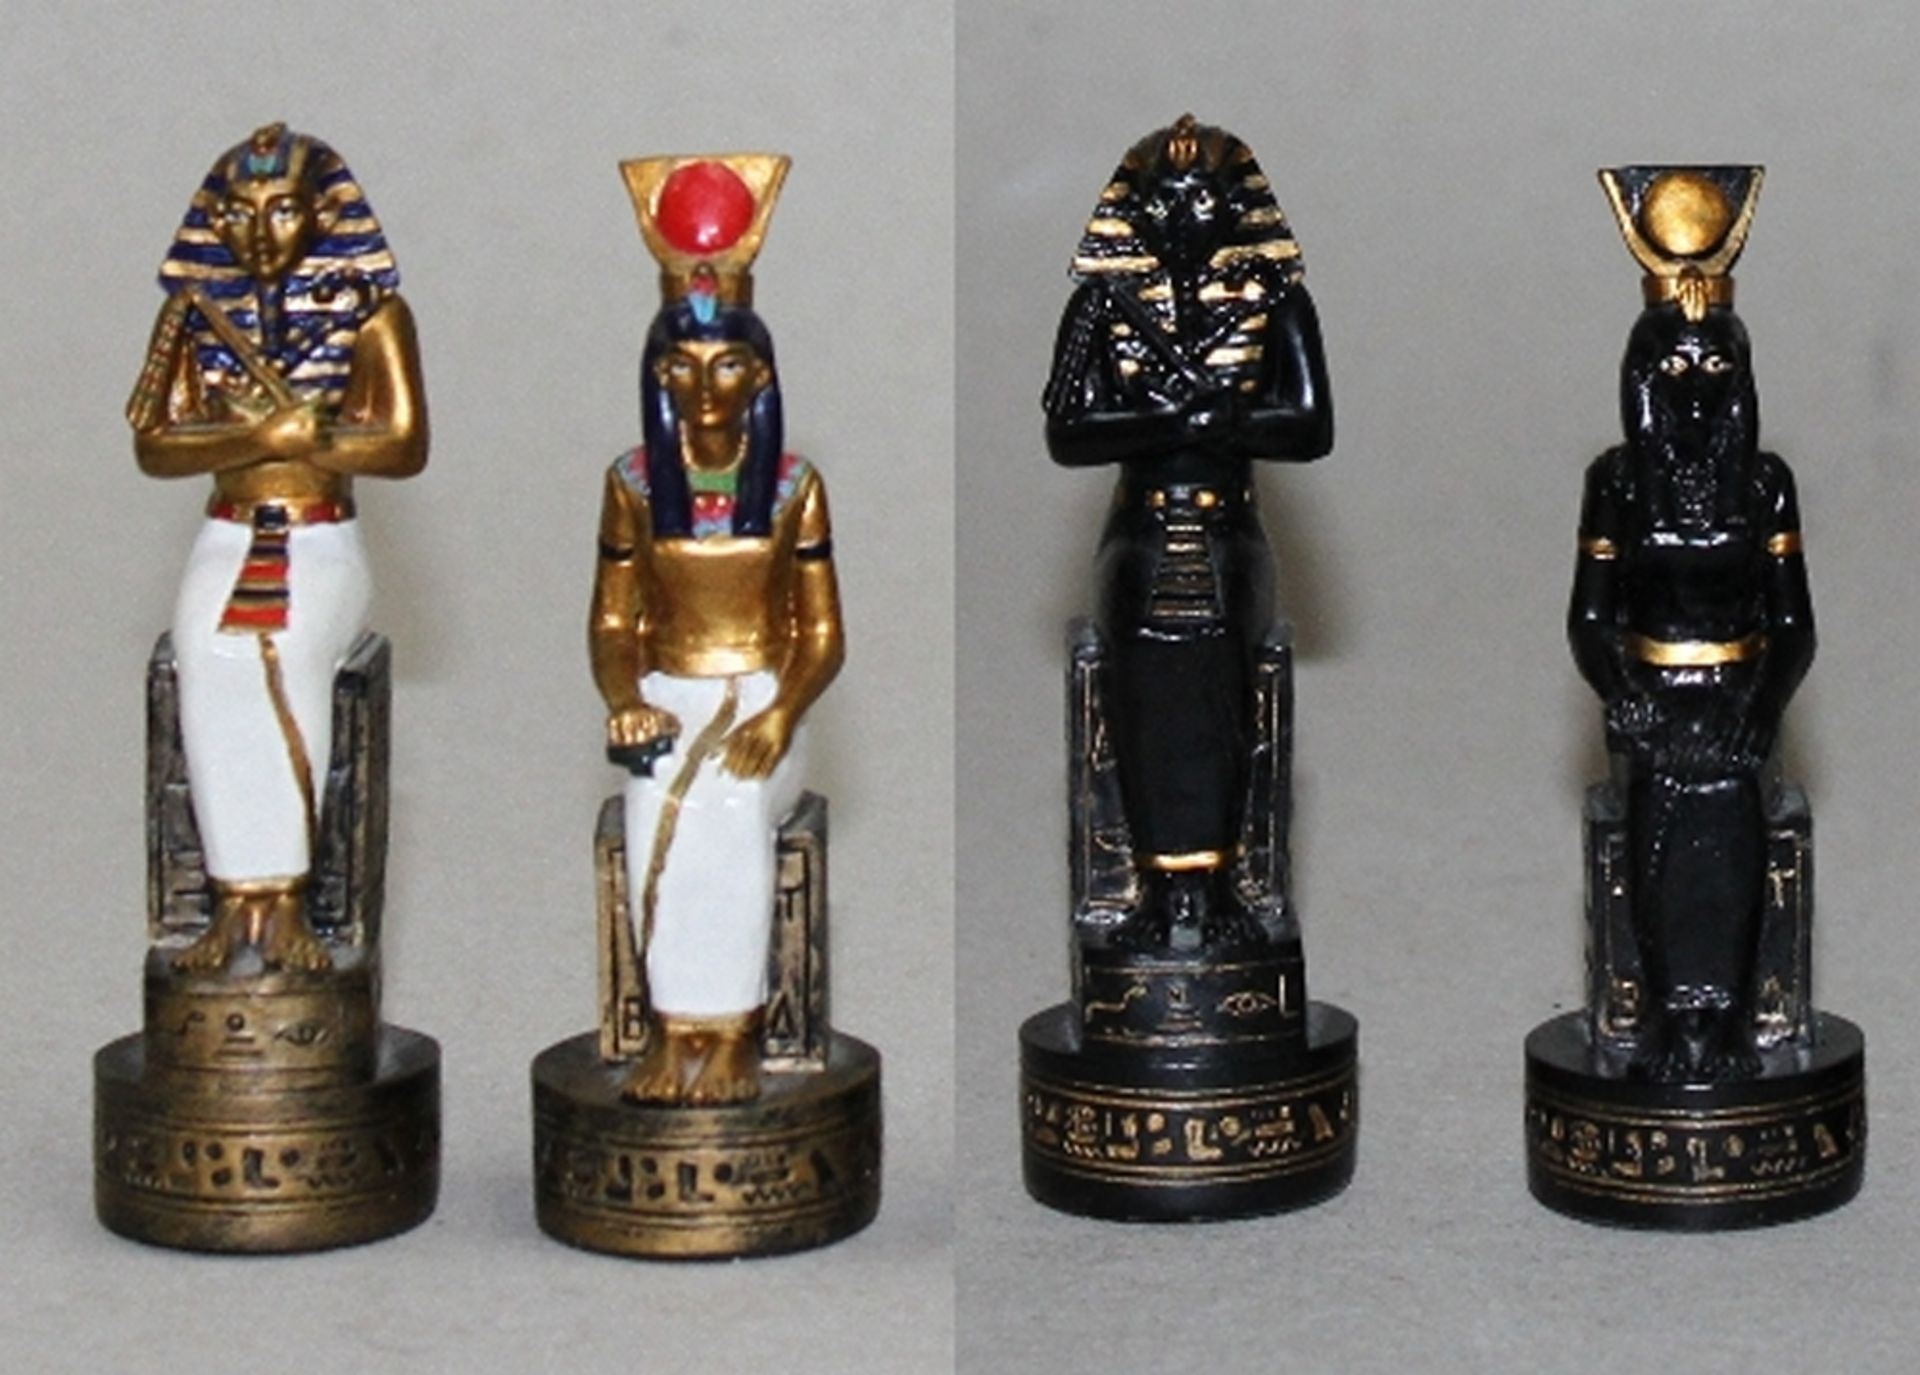 Afrika. Ägypten. Schachfiguren aus Kunststoff - farbige Figuren nach Motiven aus dem alten